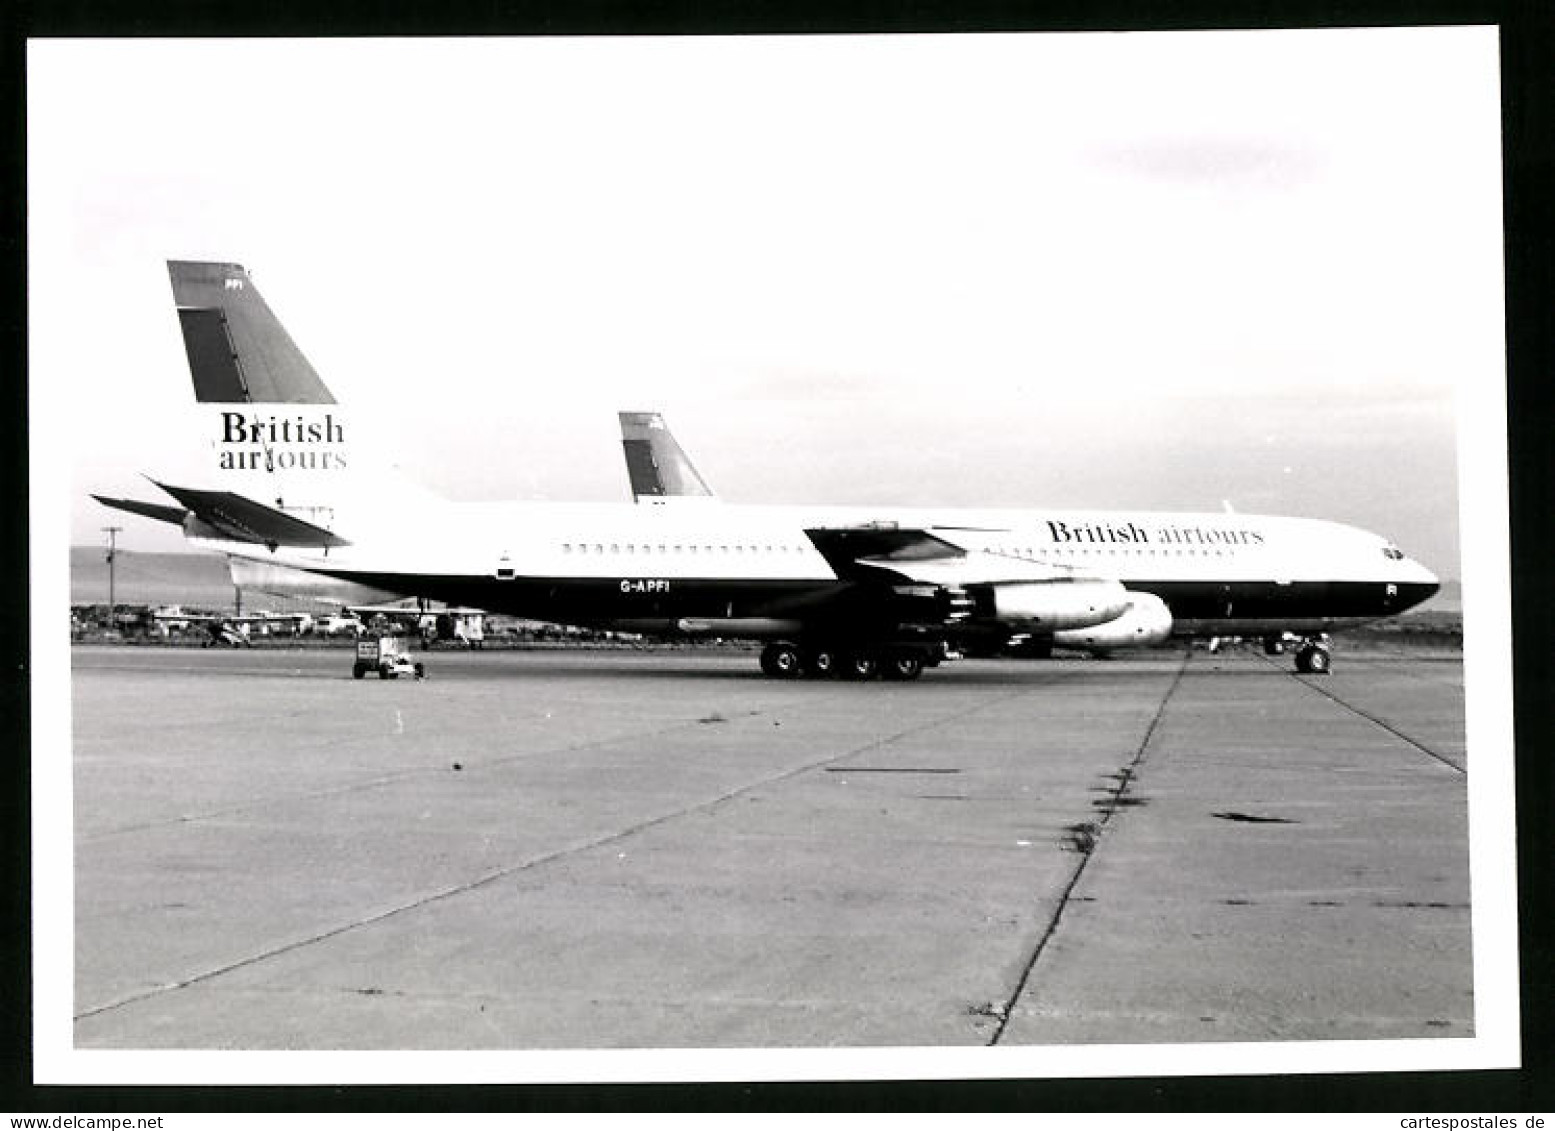 Fotografie Flugzeug Boeing 707, Passagierflugzeug British Airtours, Kennung G-APFI  - Luchtvaart